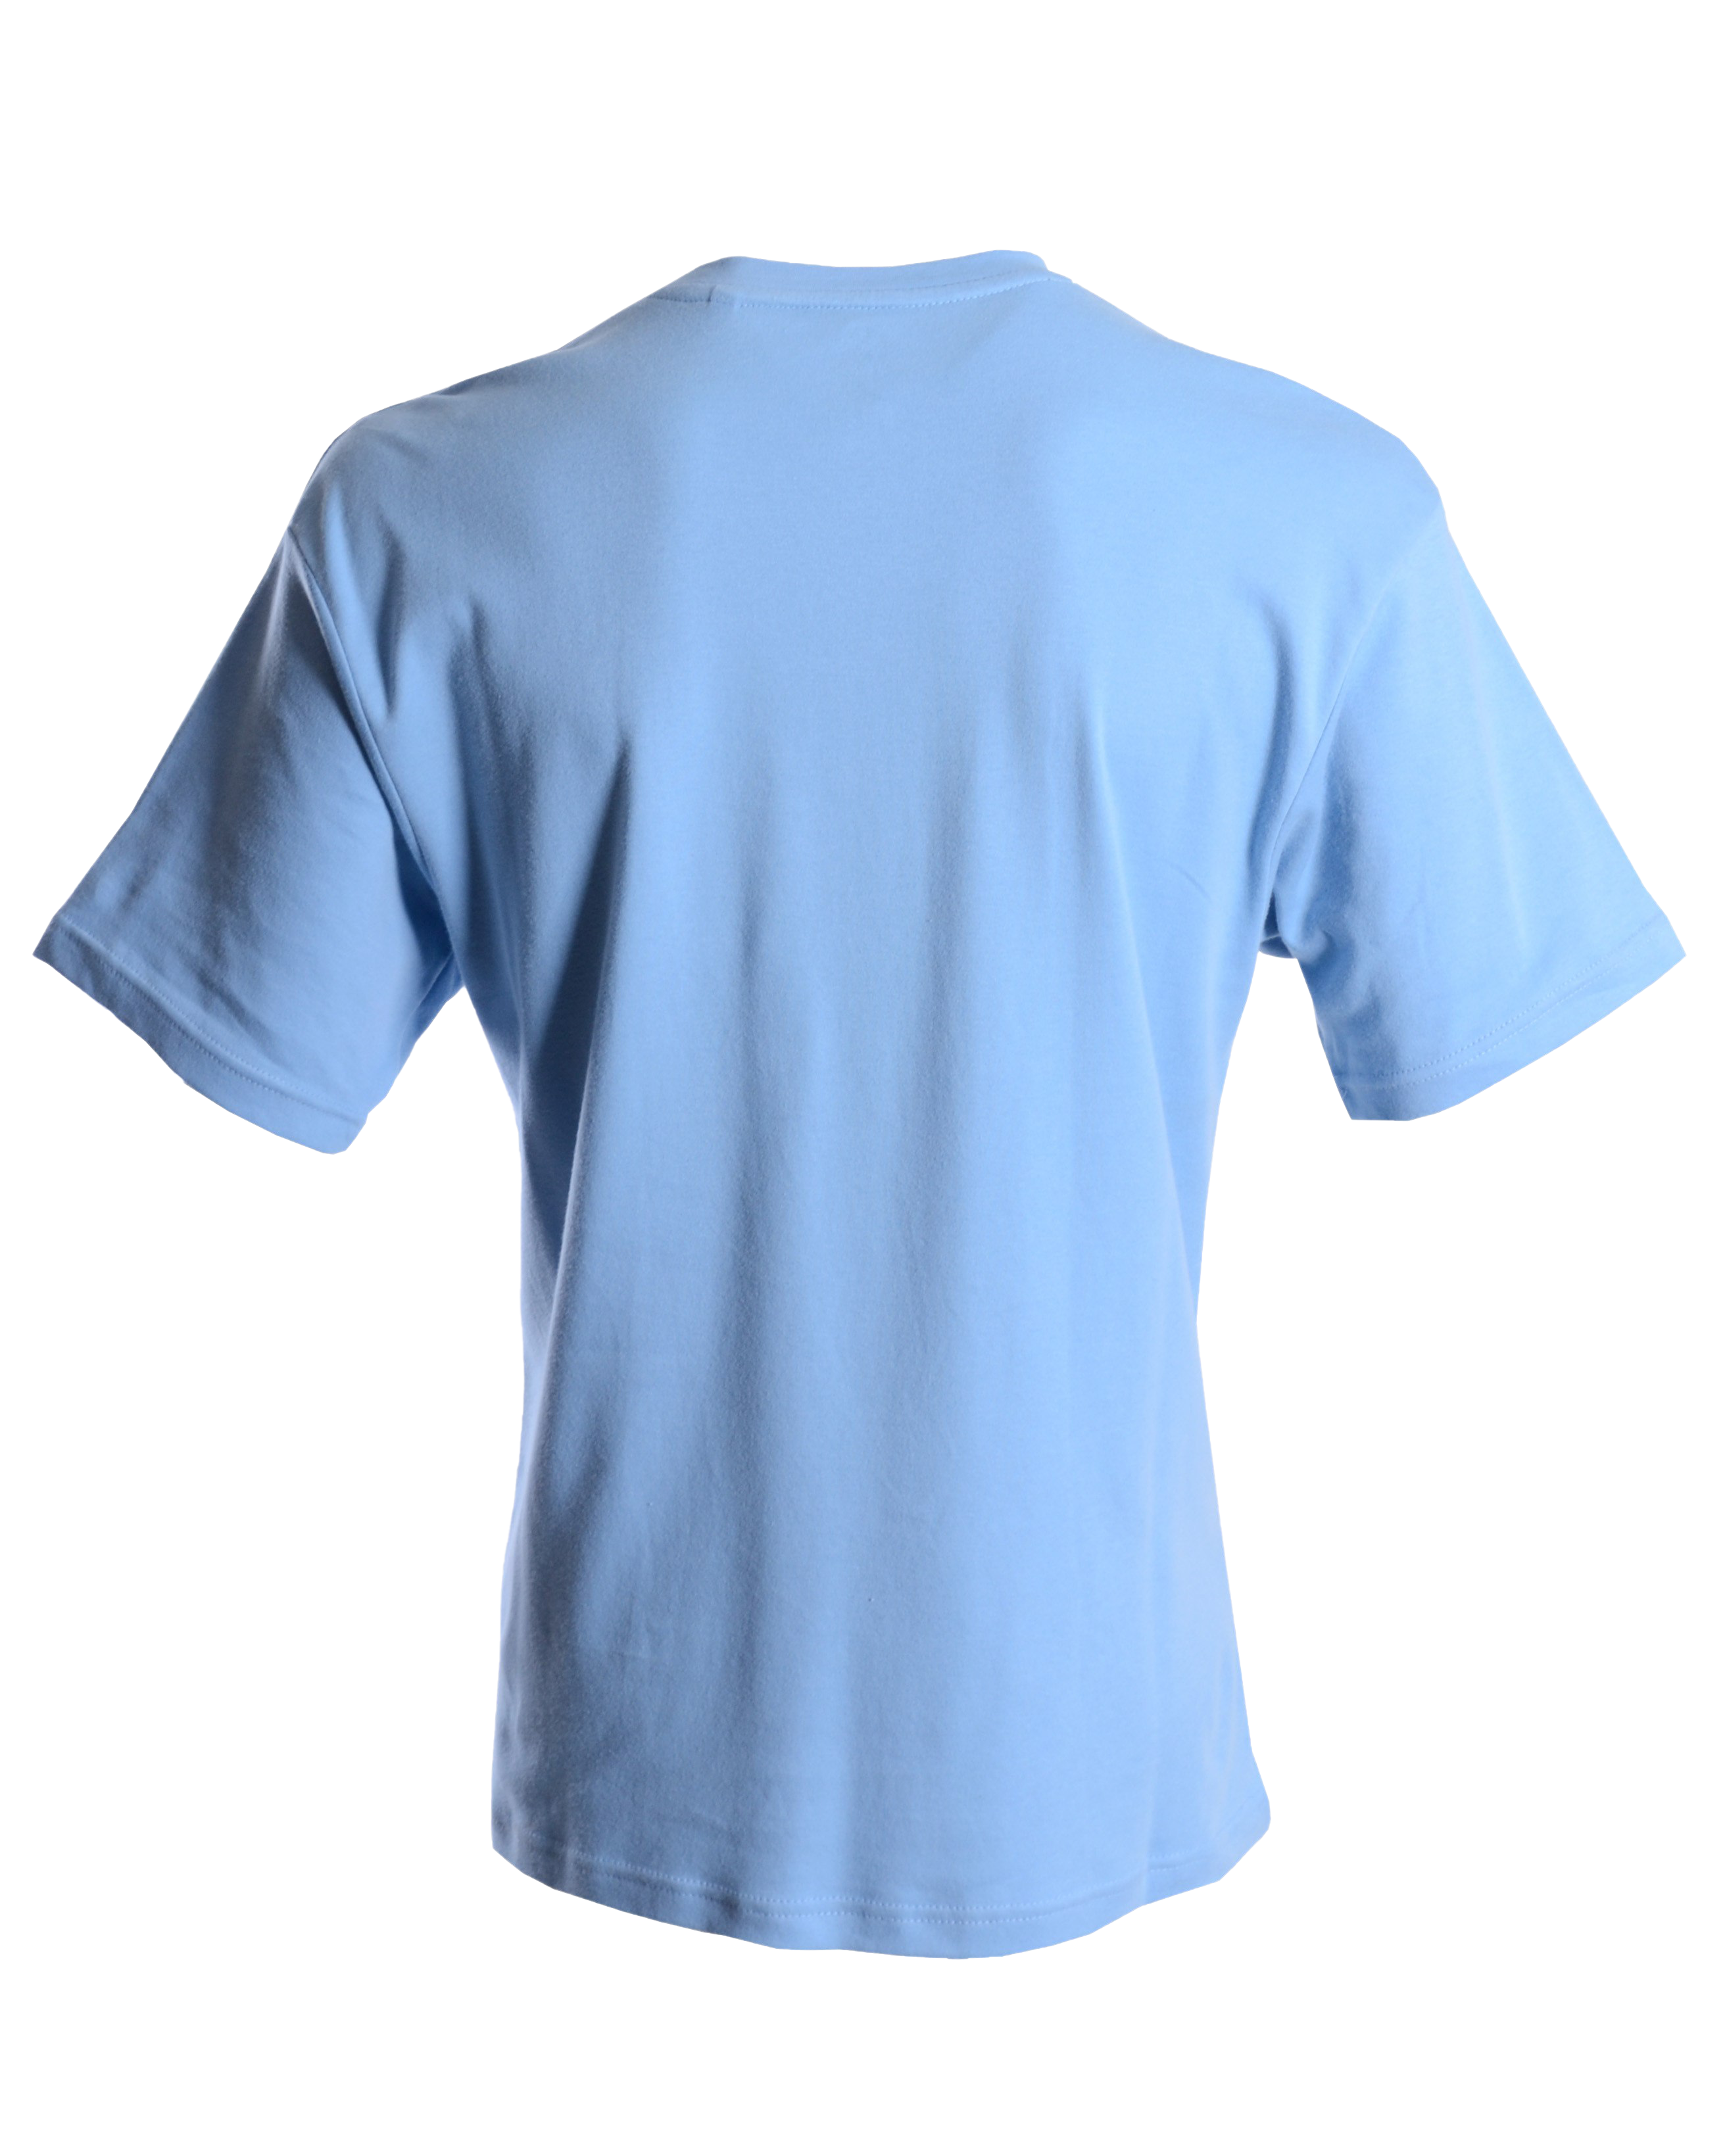 T-shirt bleu clair PNG Image de haute qualité